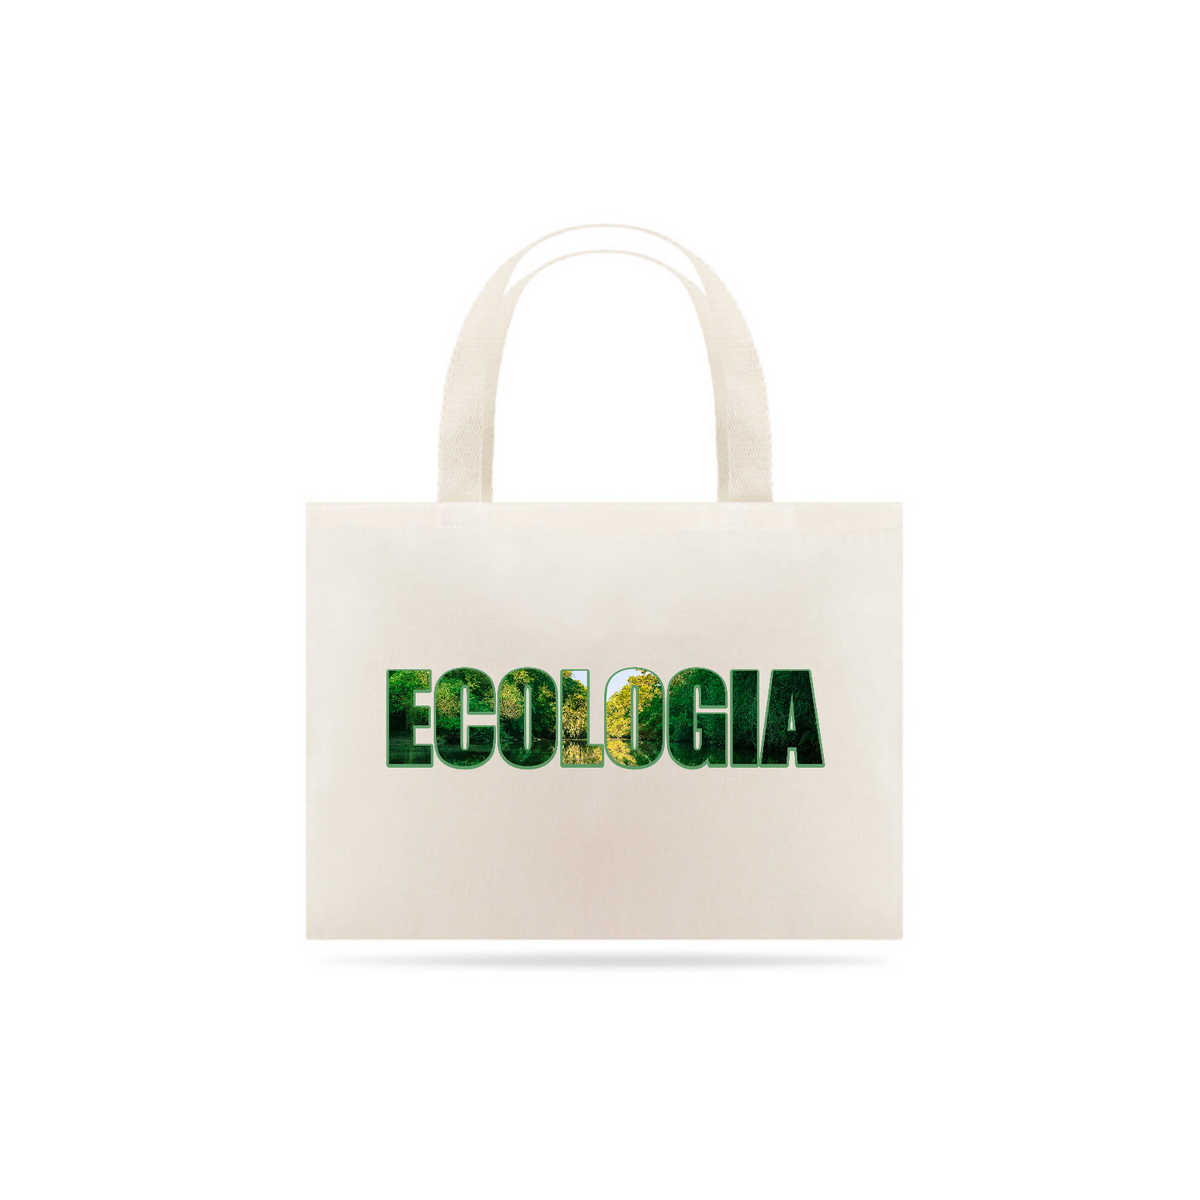 Nome do produto: Eco bag - Frases criativas – Ecologia 